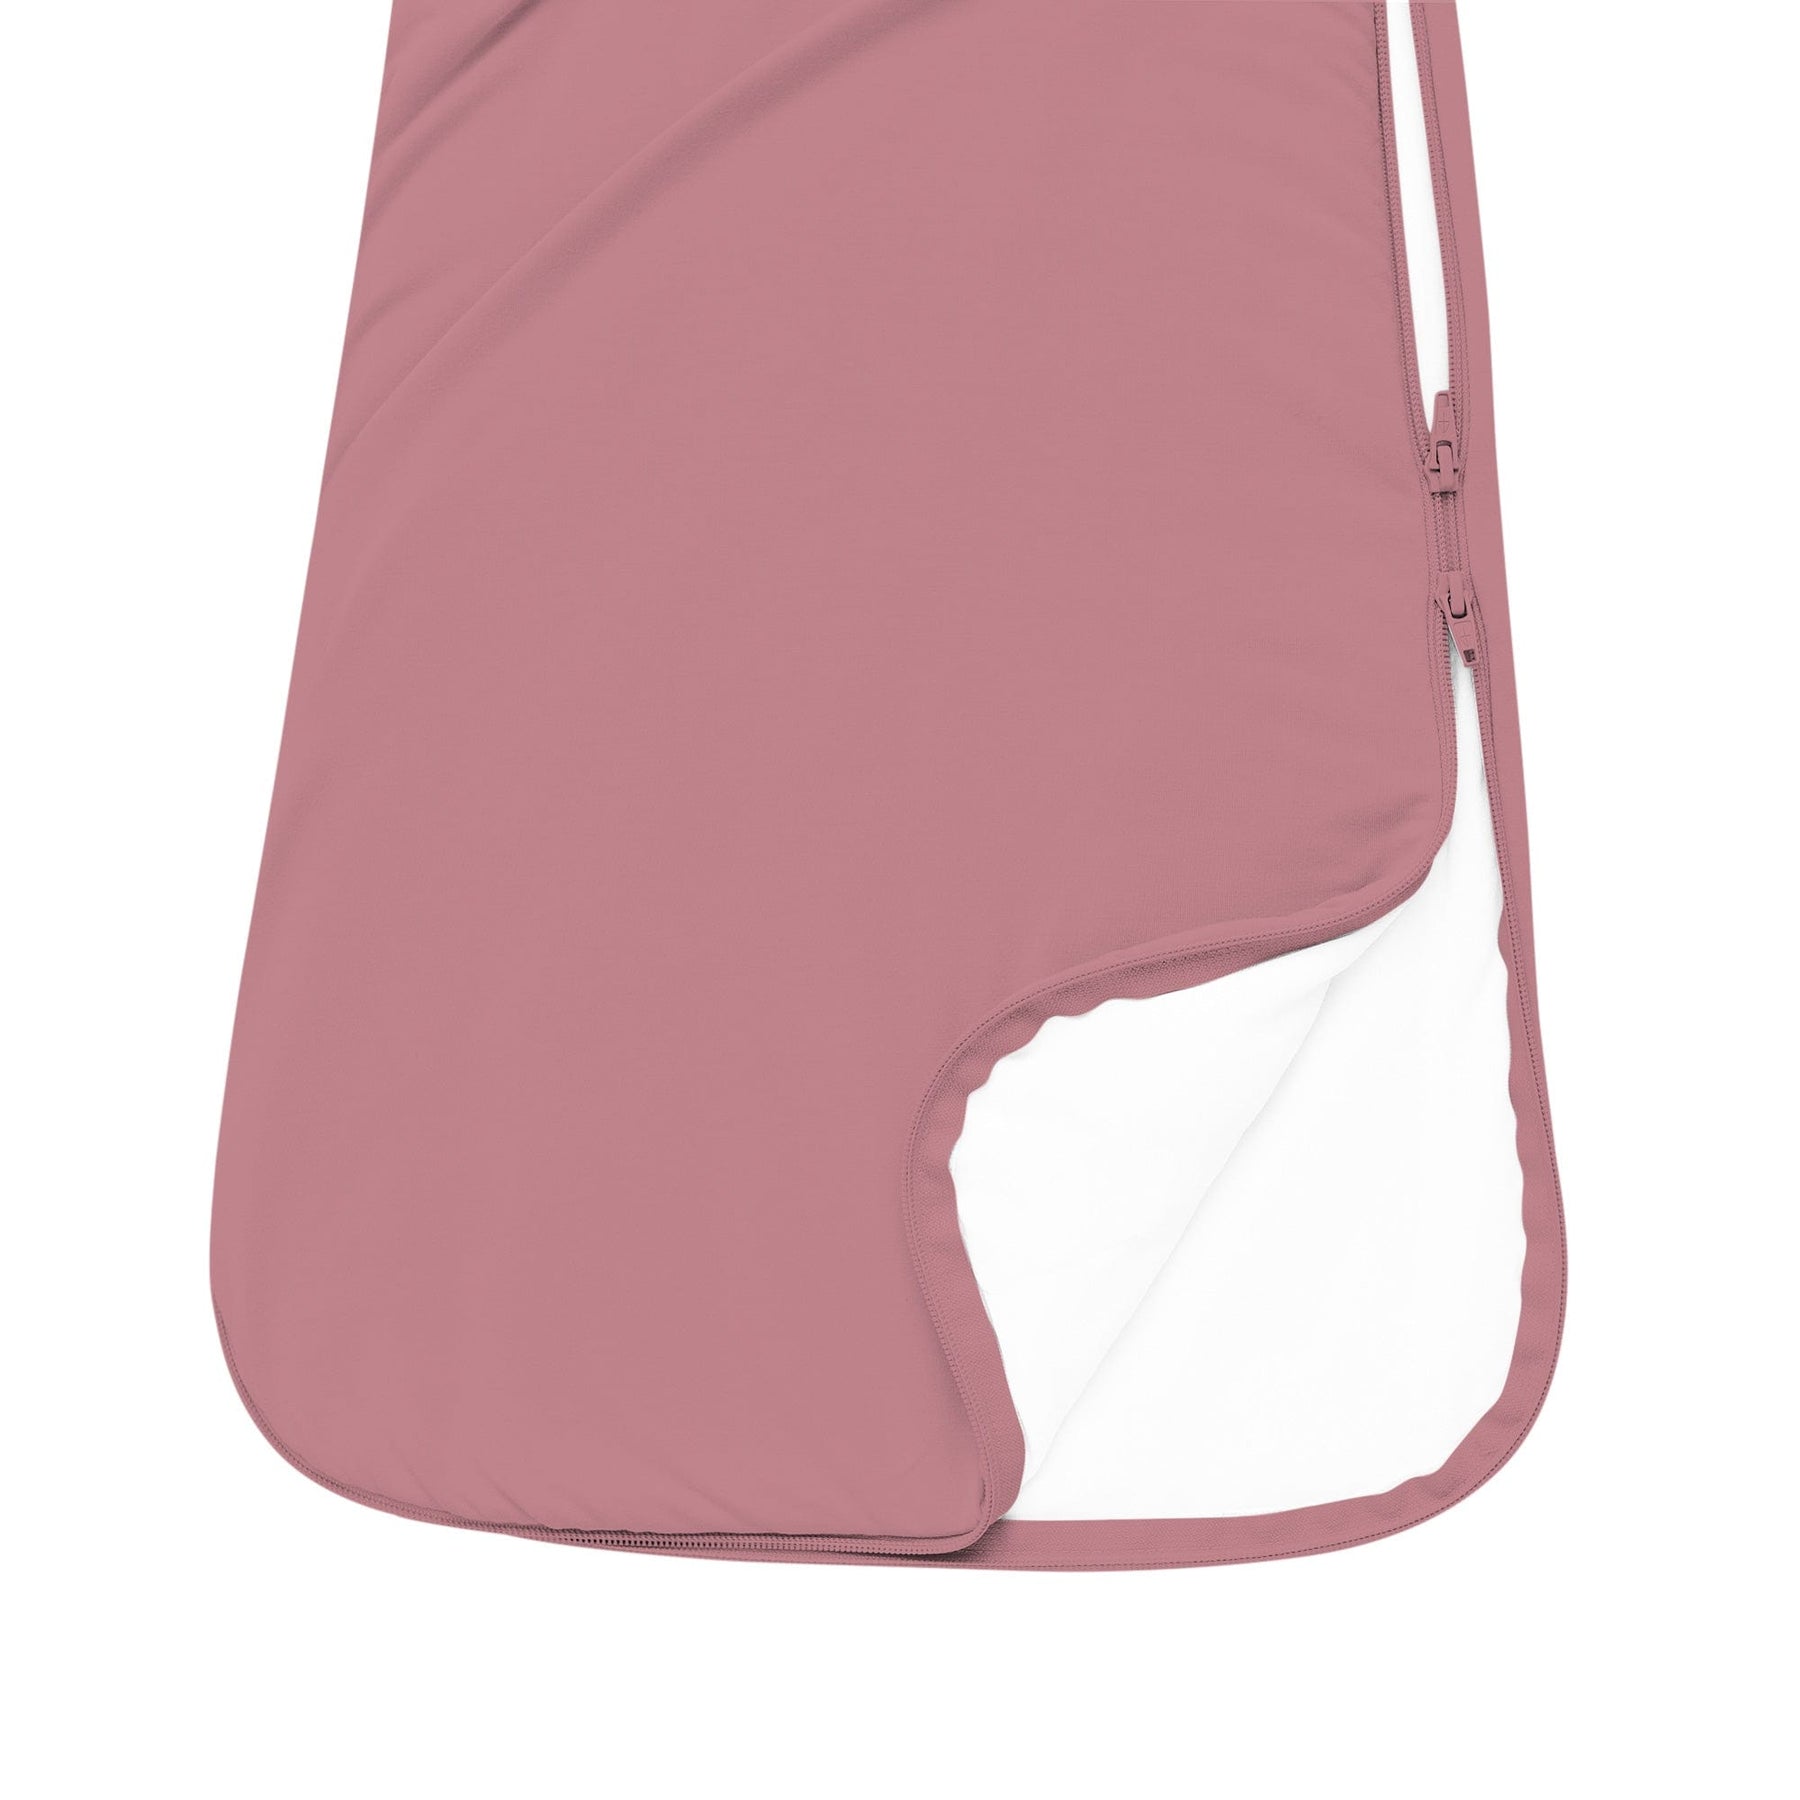 Kyte Baby Sleep Bag 1.0 Tog Sleep Bag in Dusty Rose 1.0